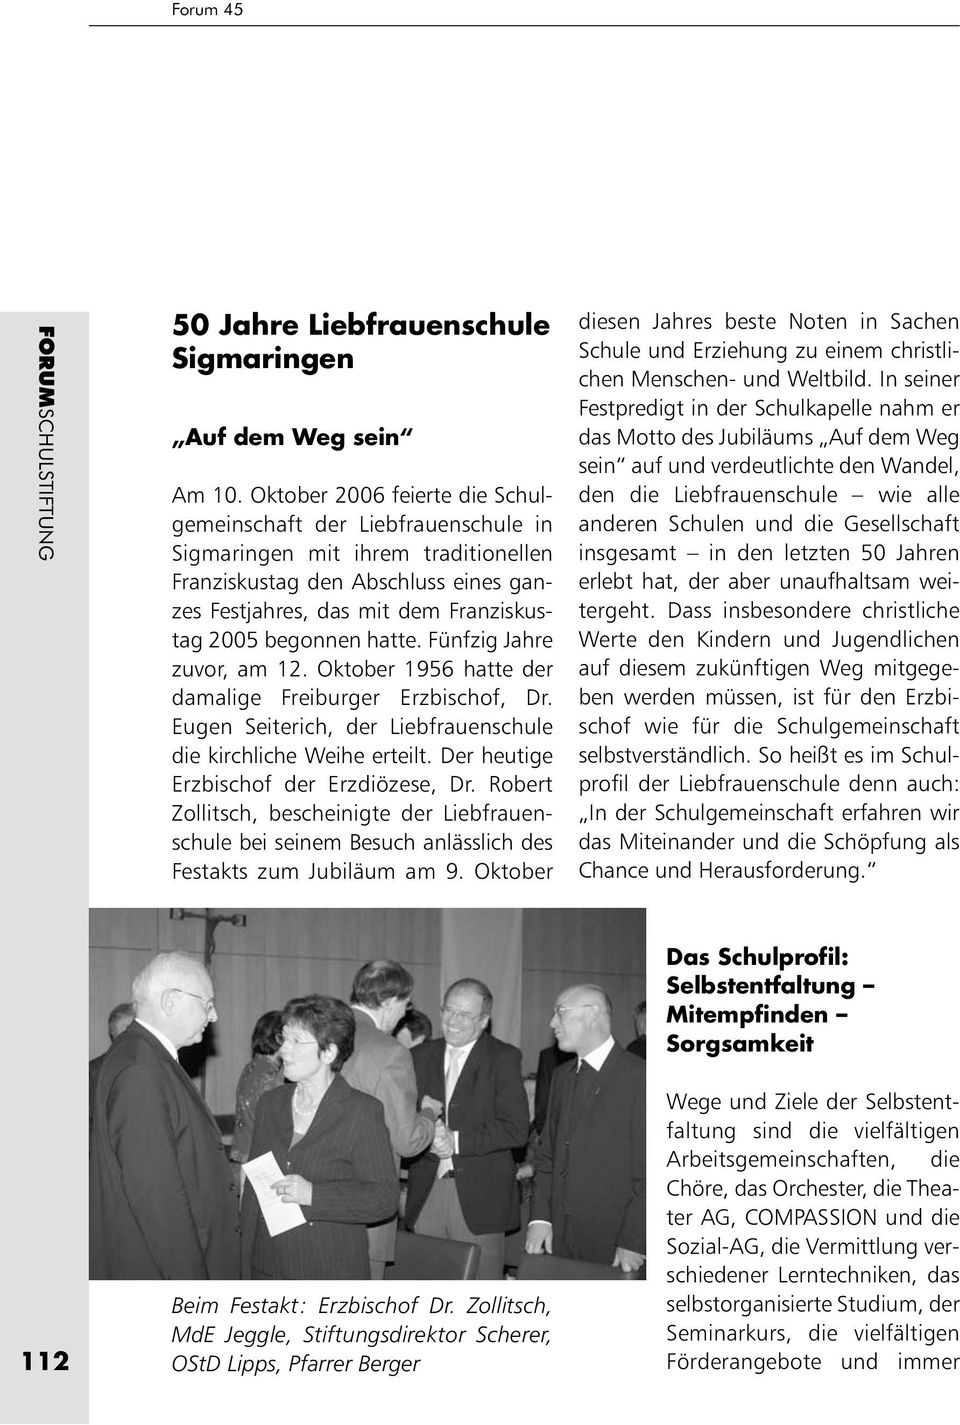 hatte. Fünfzig Jahre zuvor, am 12. Oktober 1956 hatte der damalige Freiburger Erzbischof, Dr. Eugen Seiterich, der Liebfrauenschule die kirchliche Weihe erteilt.